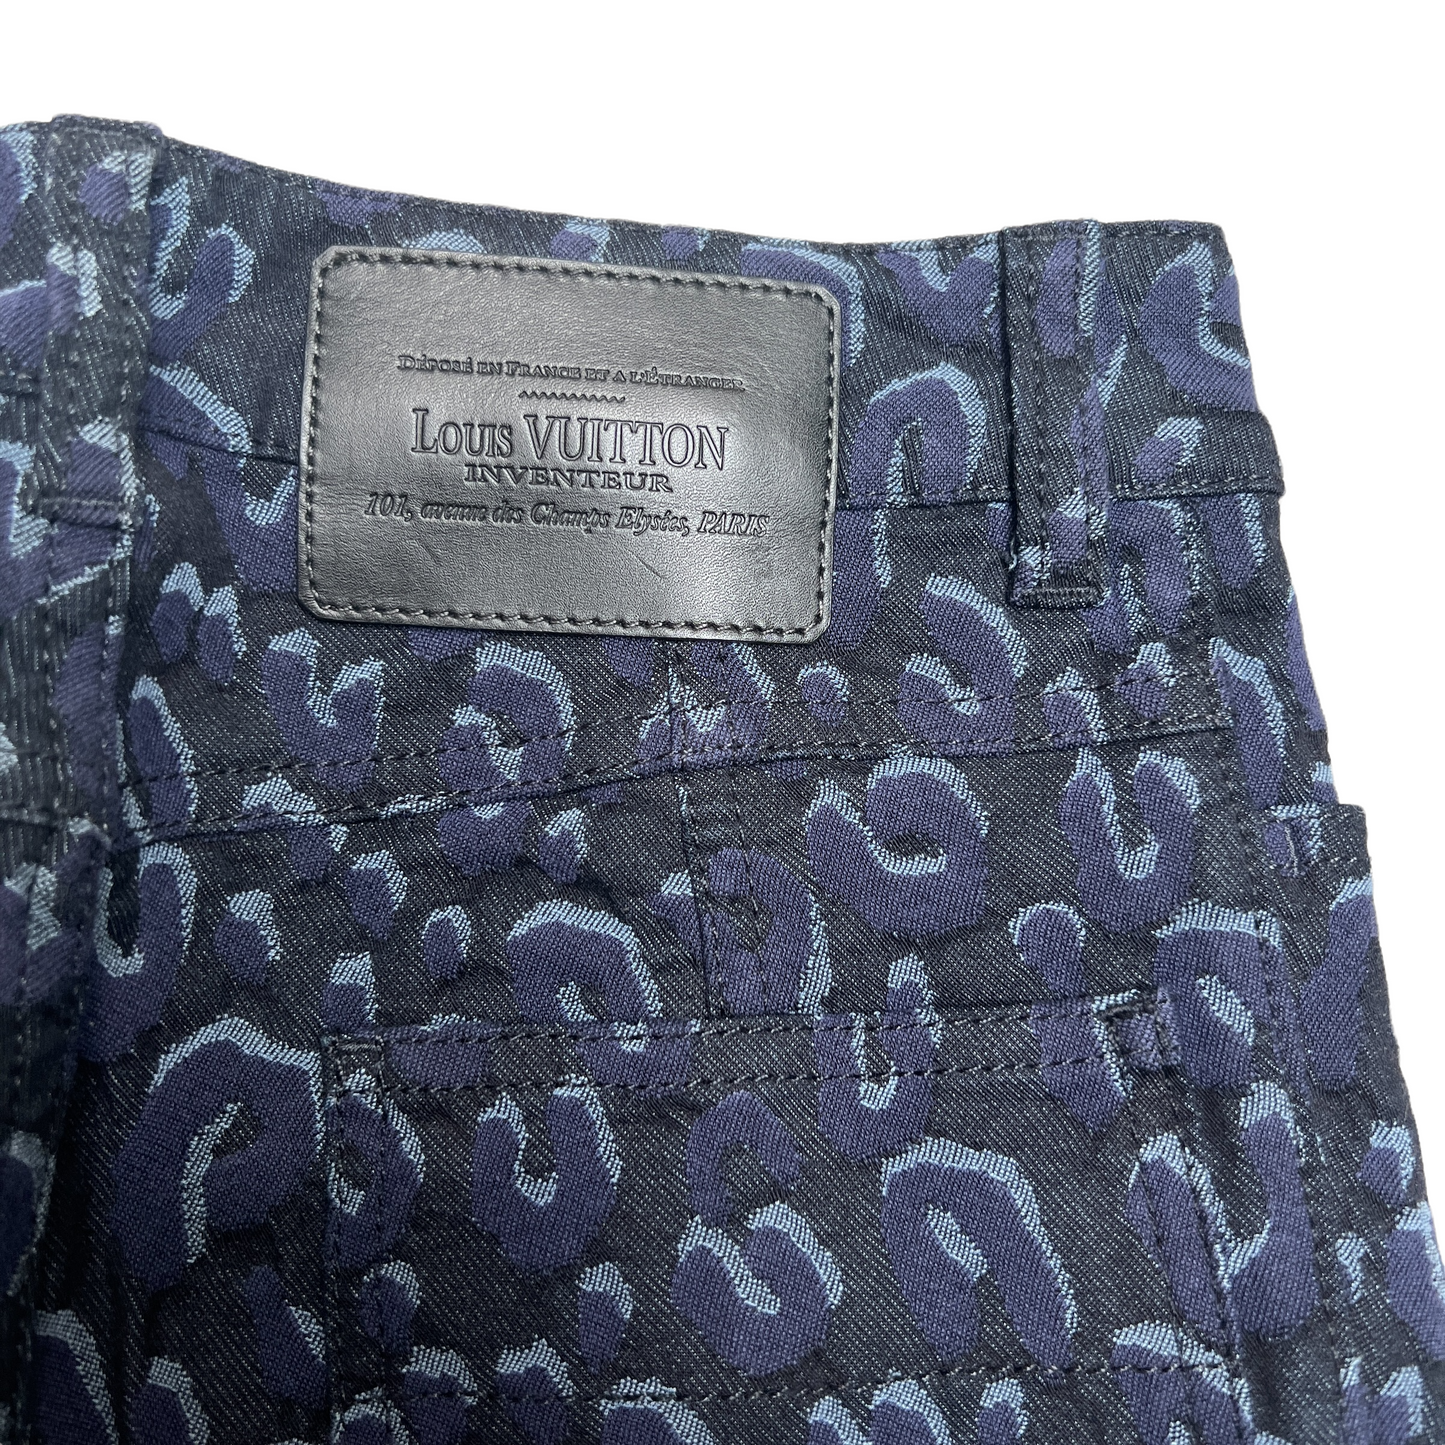 Leopard Print Blue Jeans - S